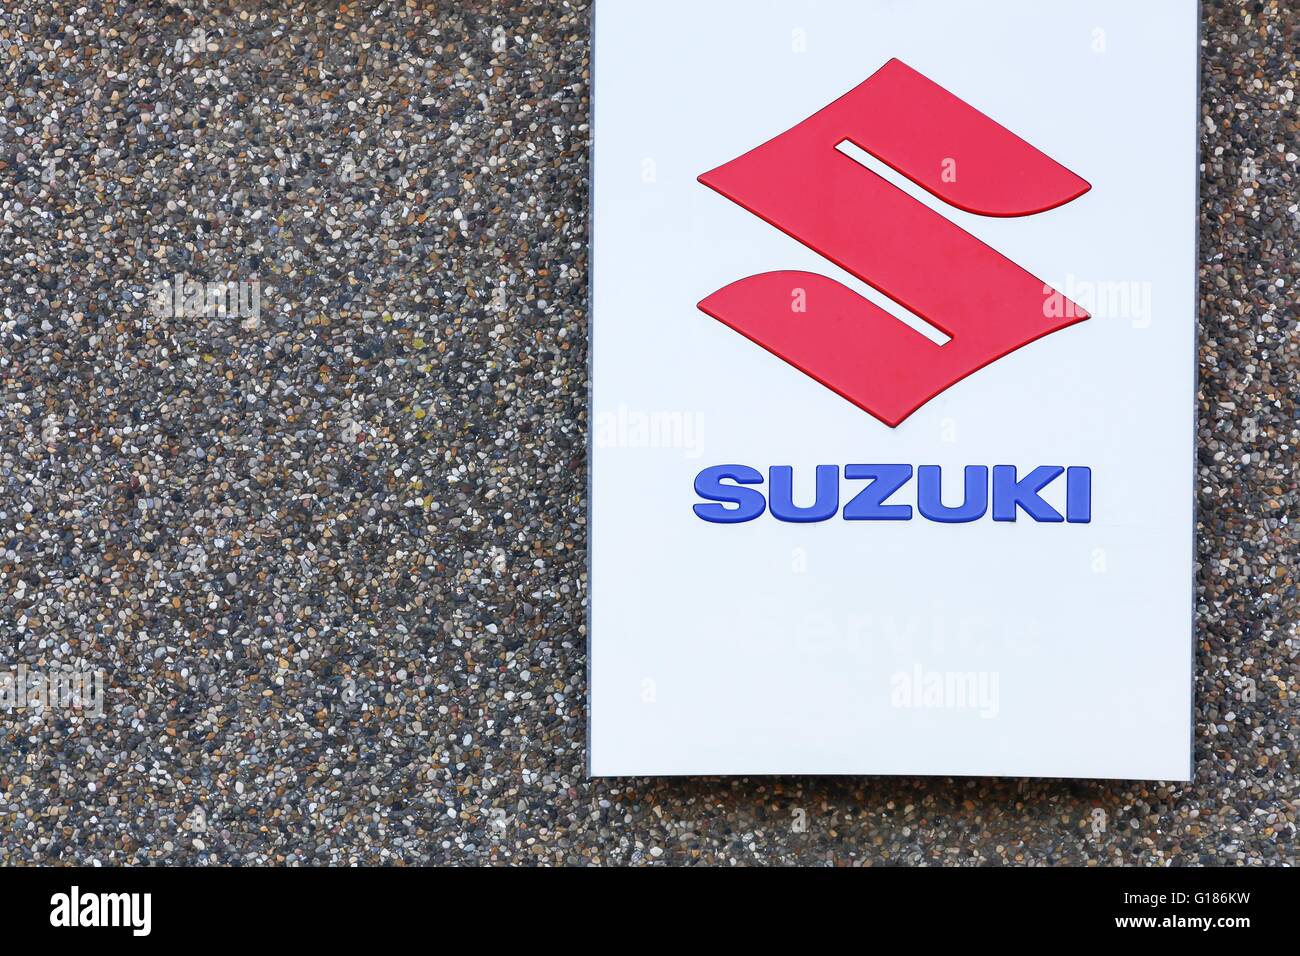 Suzuki car logo hi-res stock photography and images - Alamy